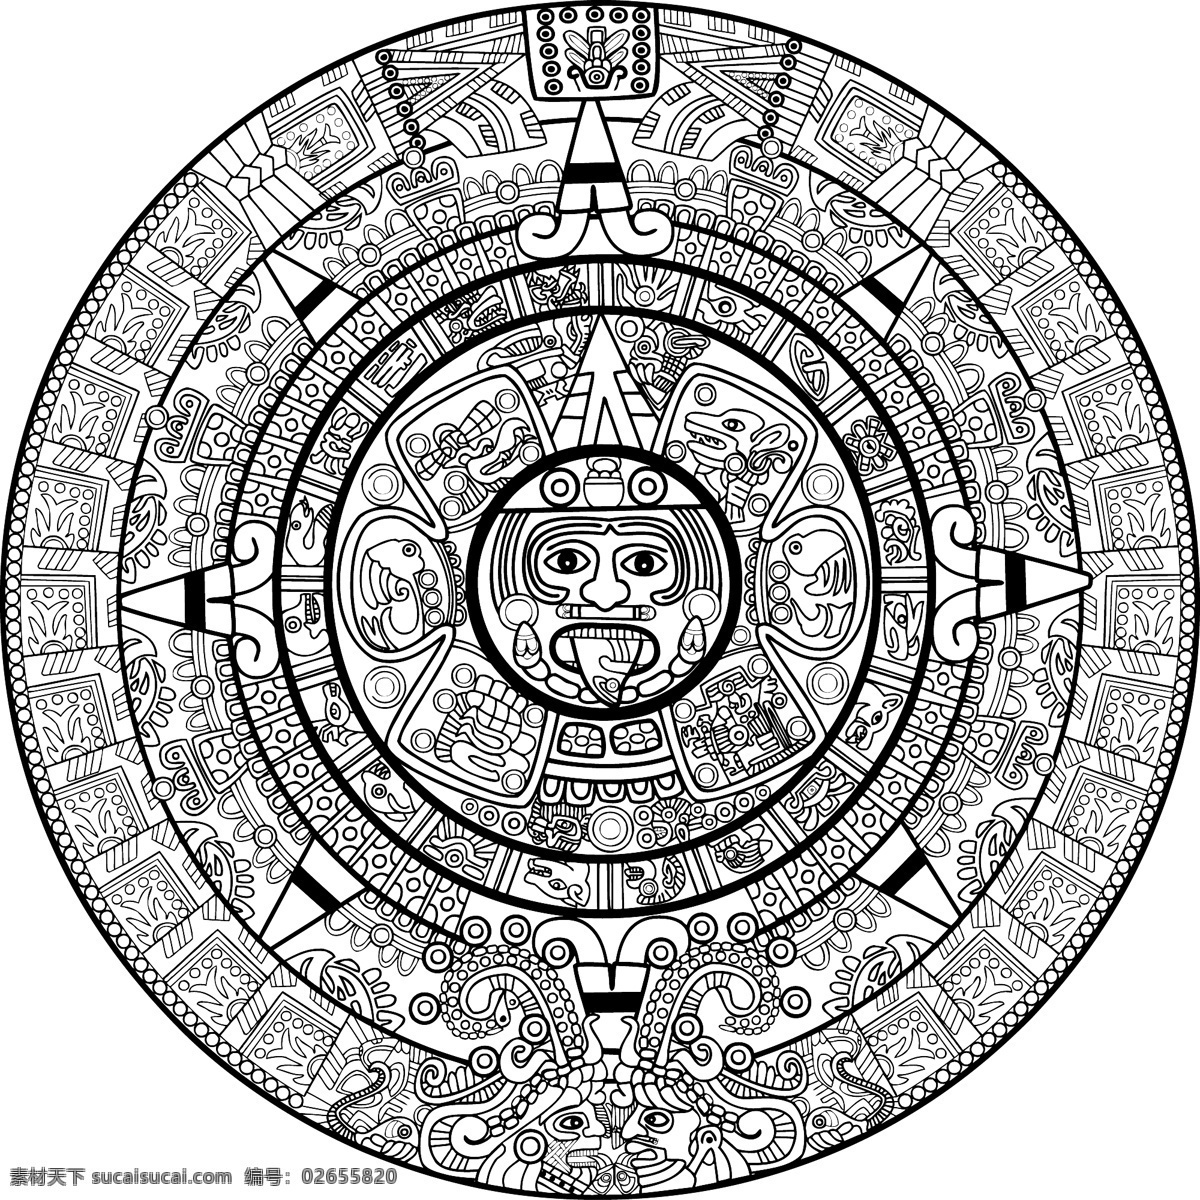 玛雅 图案 矢量 埃及 材质 传统 风格 玛雅人的图案 矢量图 现代科技